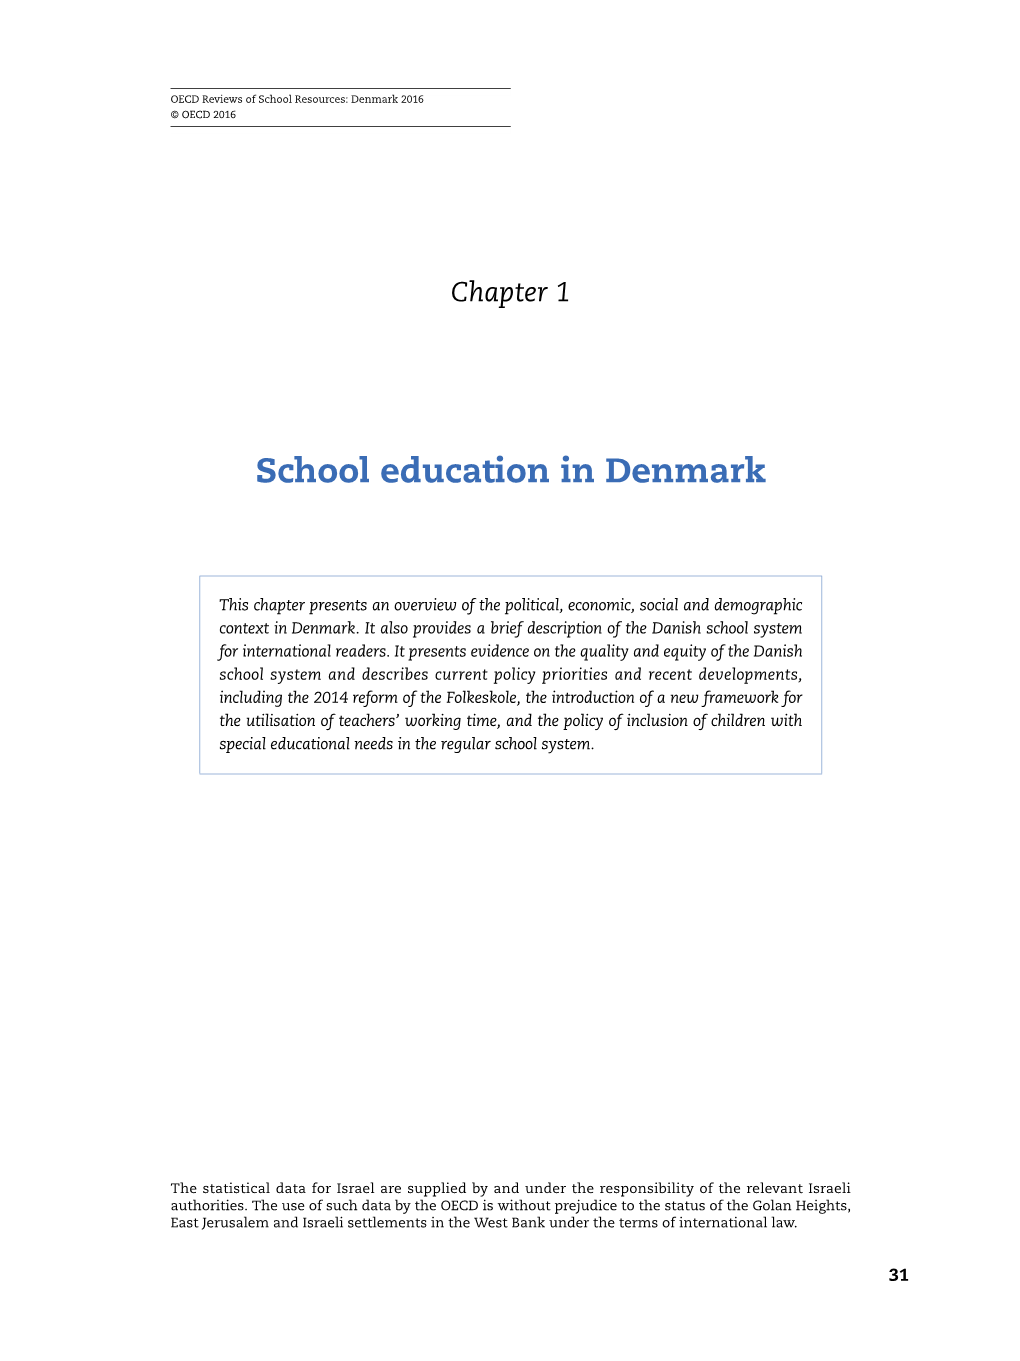 School Education in Denmark